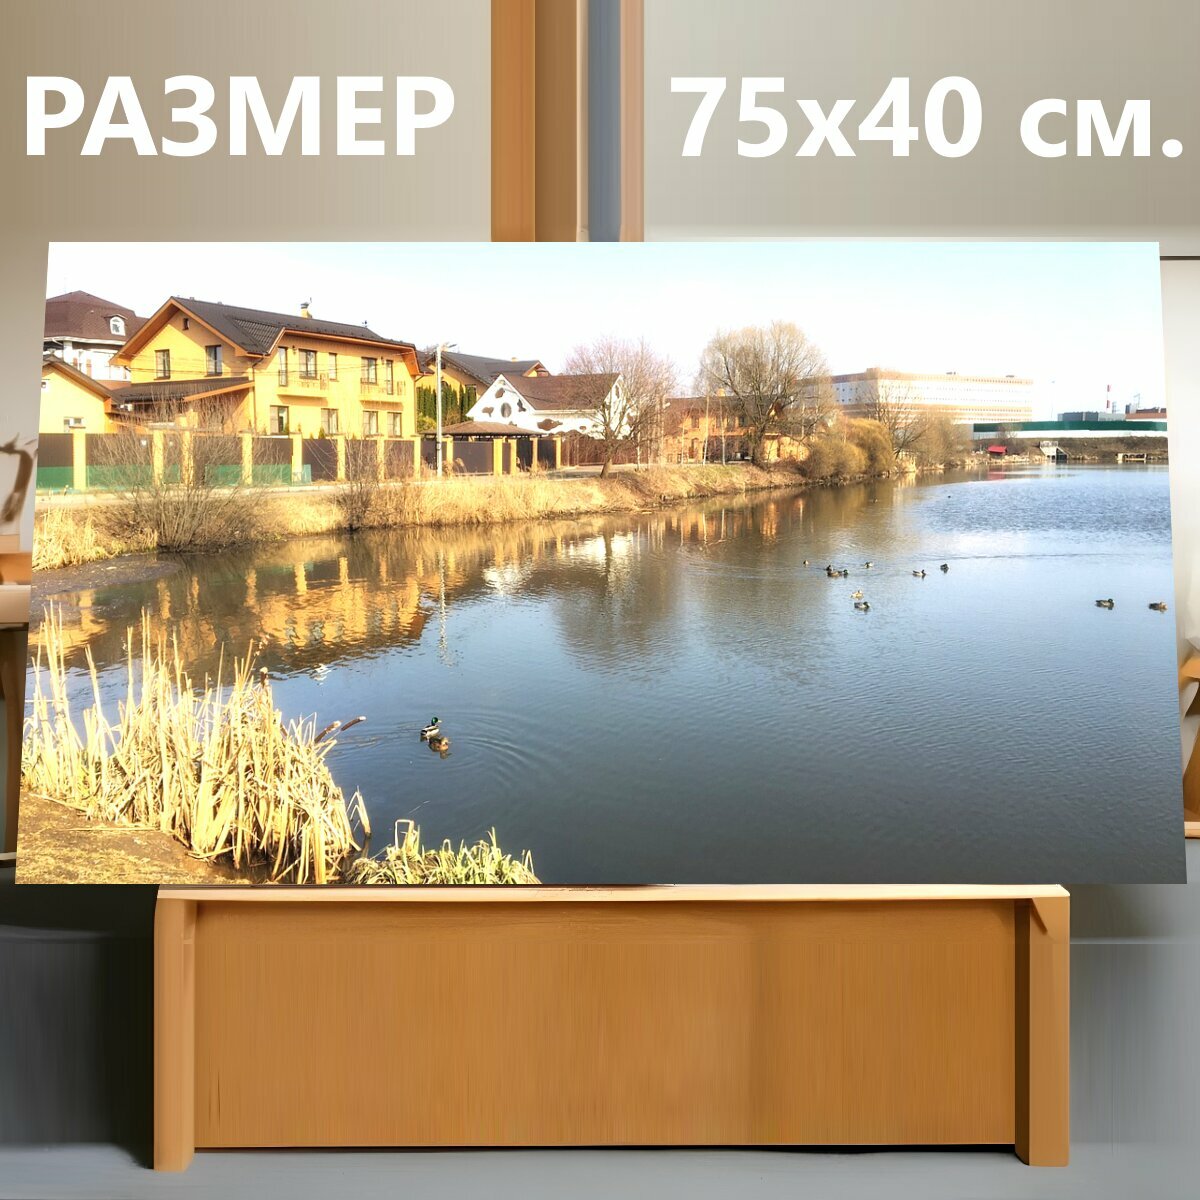 Картина на холсте "Озеро, утки, дома" на подрамнике 75х40 см. для интерьера